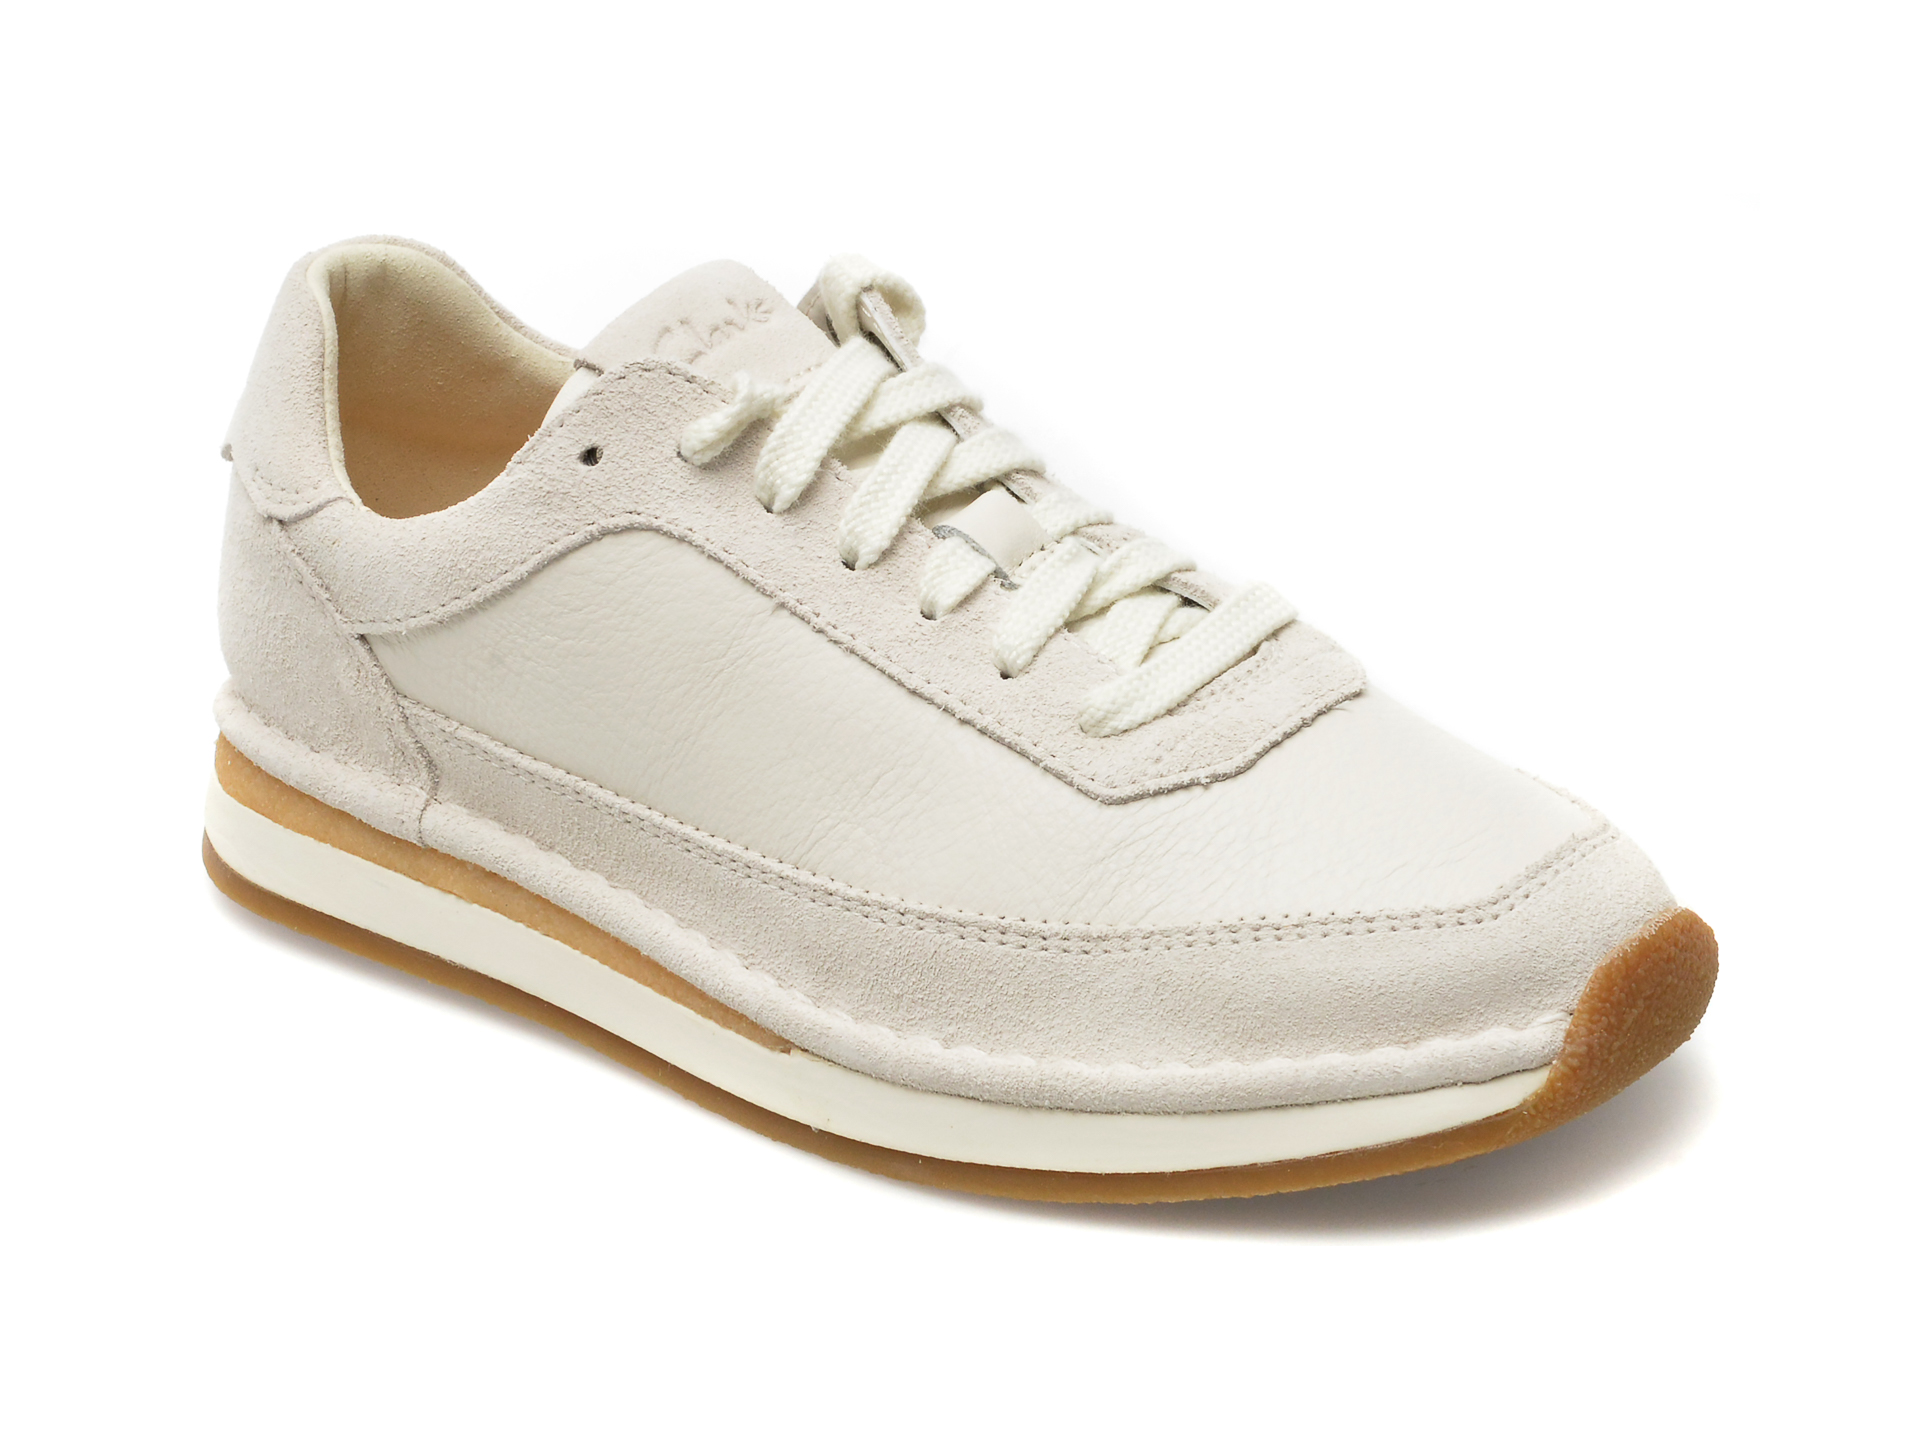 Pantofi CLARKS albi, CRAFTRUN LACE 13-I, din piele intoarsa /femei/pantofi